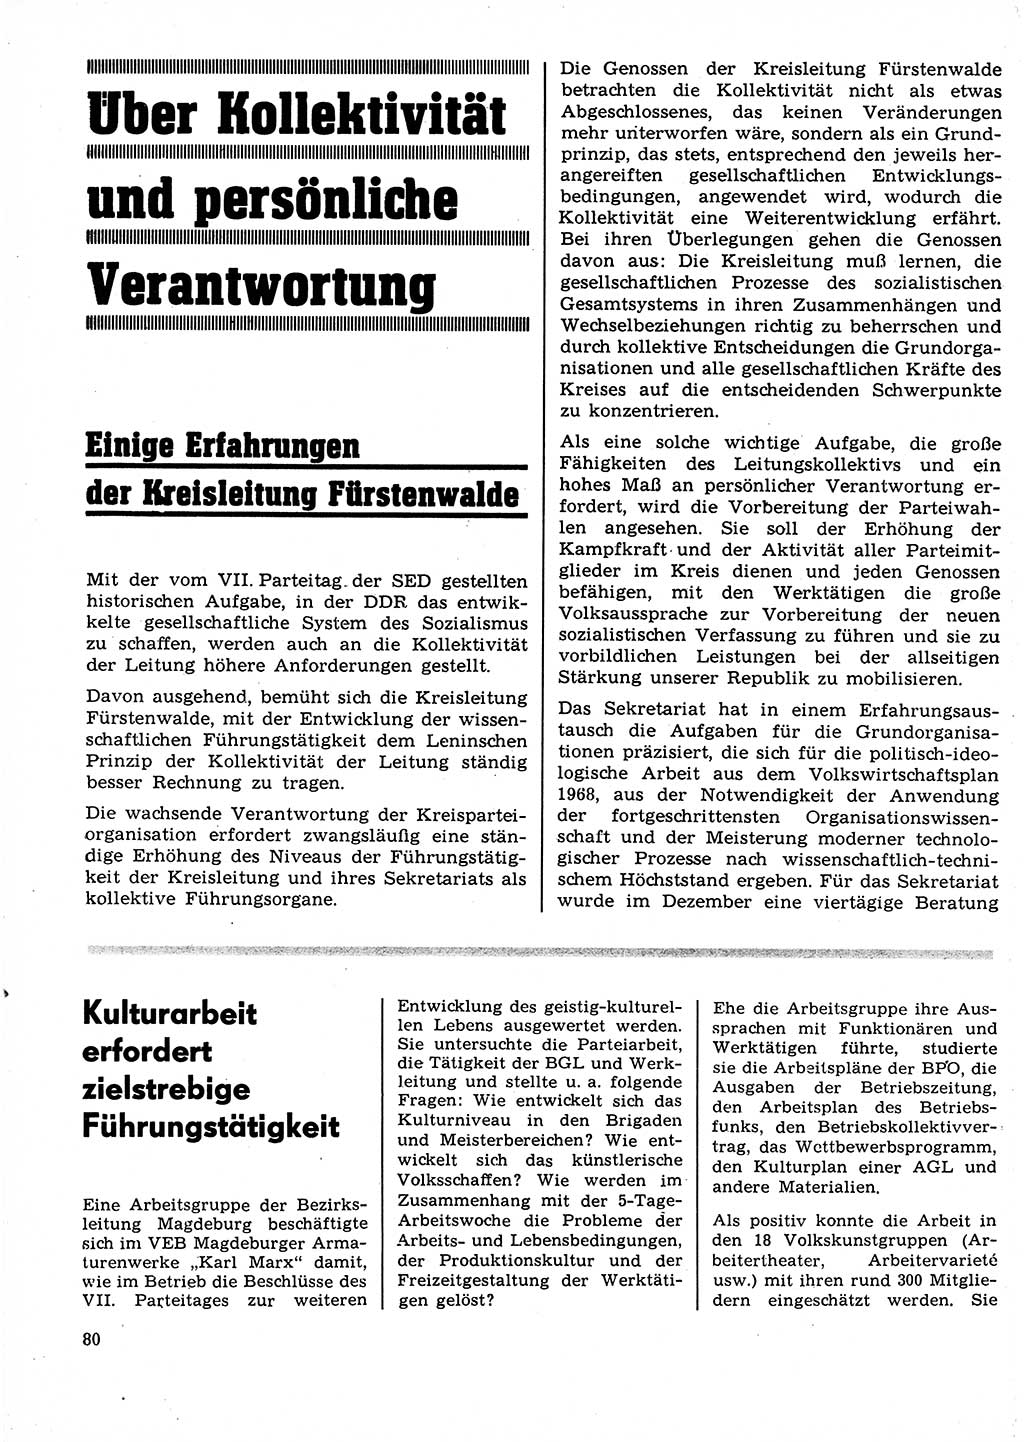 Neuer Weg (NW), Organ des Zentralkomitees (ZK) der SED (Sozialistische Einheitspartei Deutschlands) für Fragen des Parteilebens, 23. Jahrgang [Deutsche Demokratische Republik (DDR)] 1968, Seite 80 (NW ZK SED DDR 1968, S. 80)